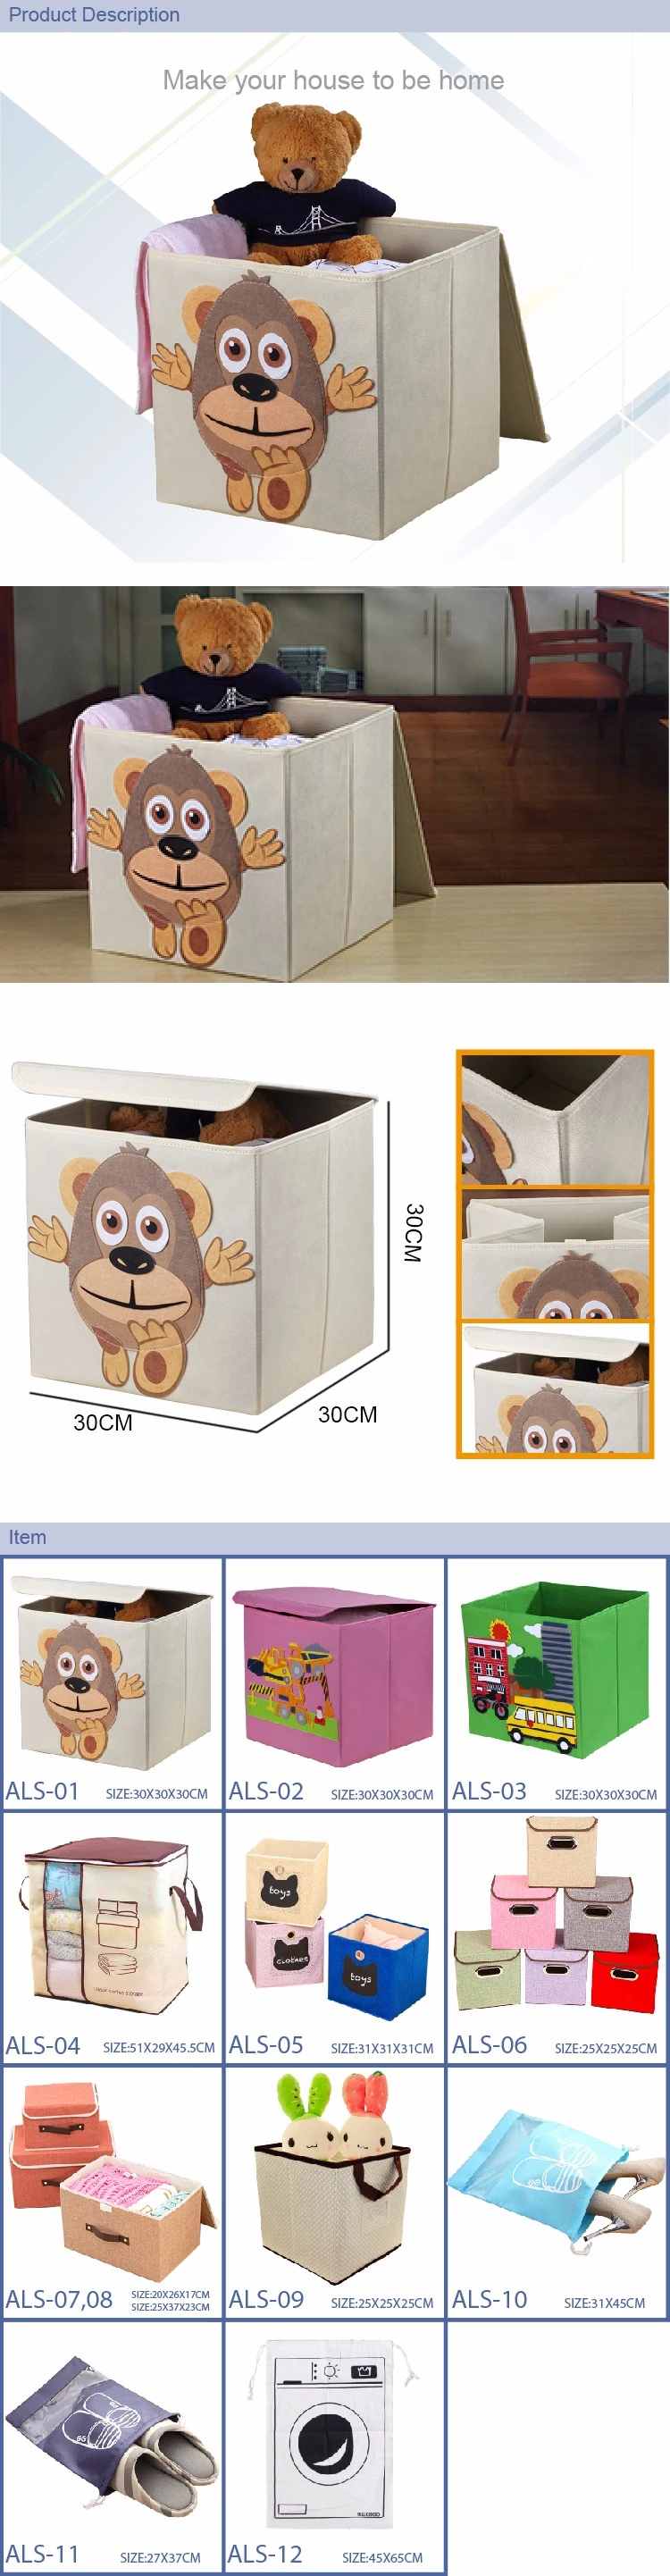 Caixa dobrável de armazenamento de brinquedos infantis - Organizador de tórax e armário de brinquedos infantis de desenho animado